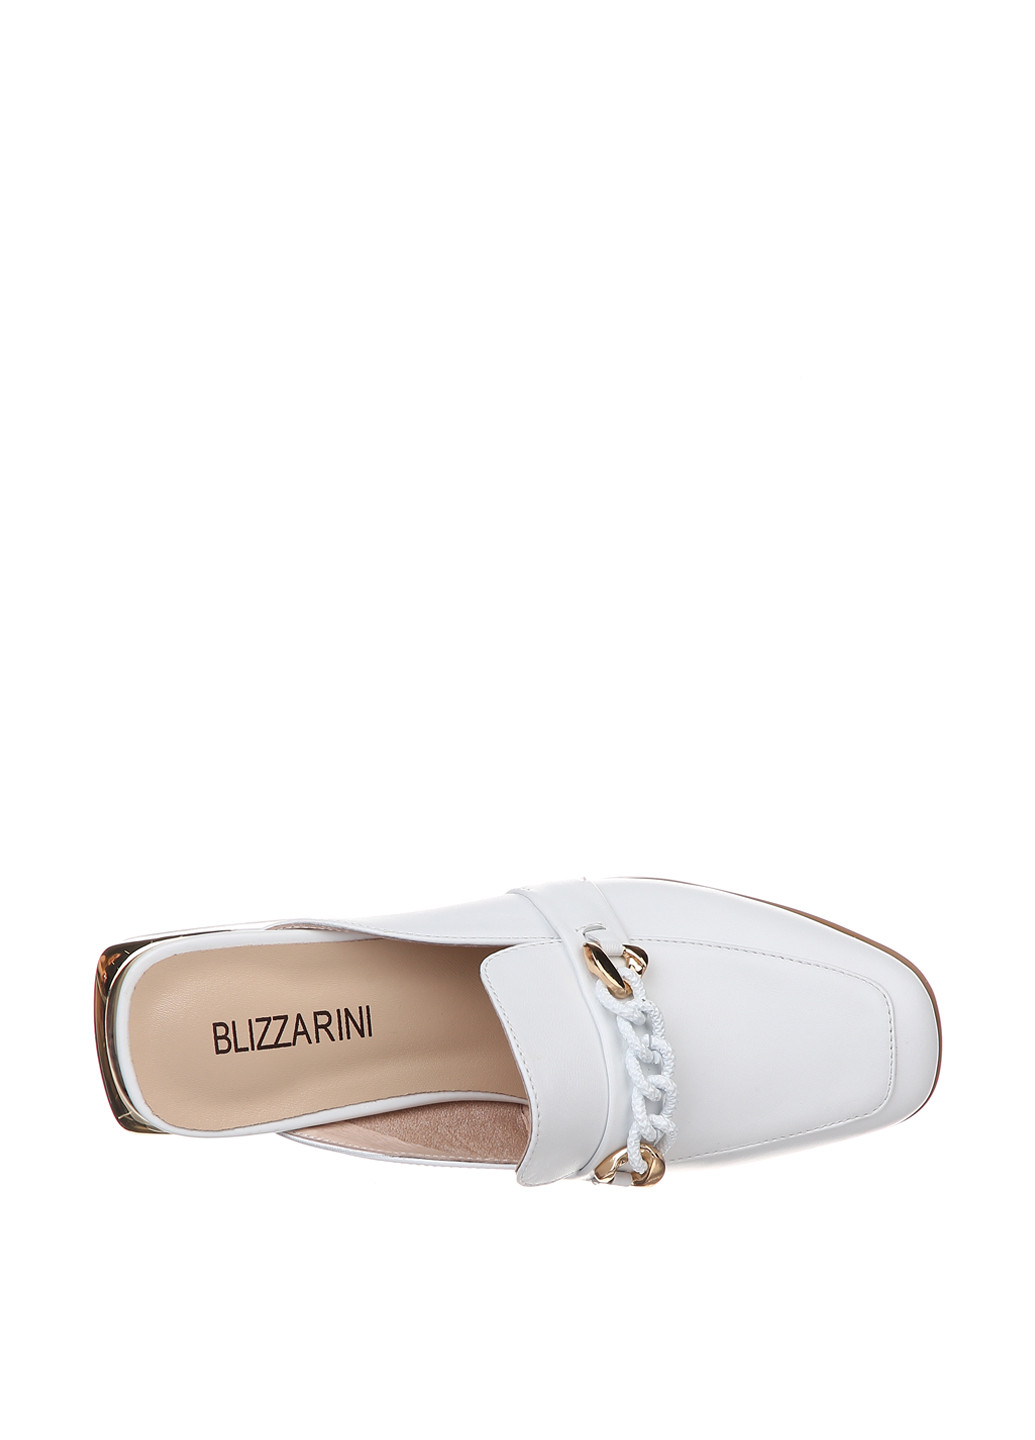 Белые сабо Blizzarini на низком каблуке с цепочками